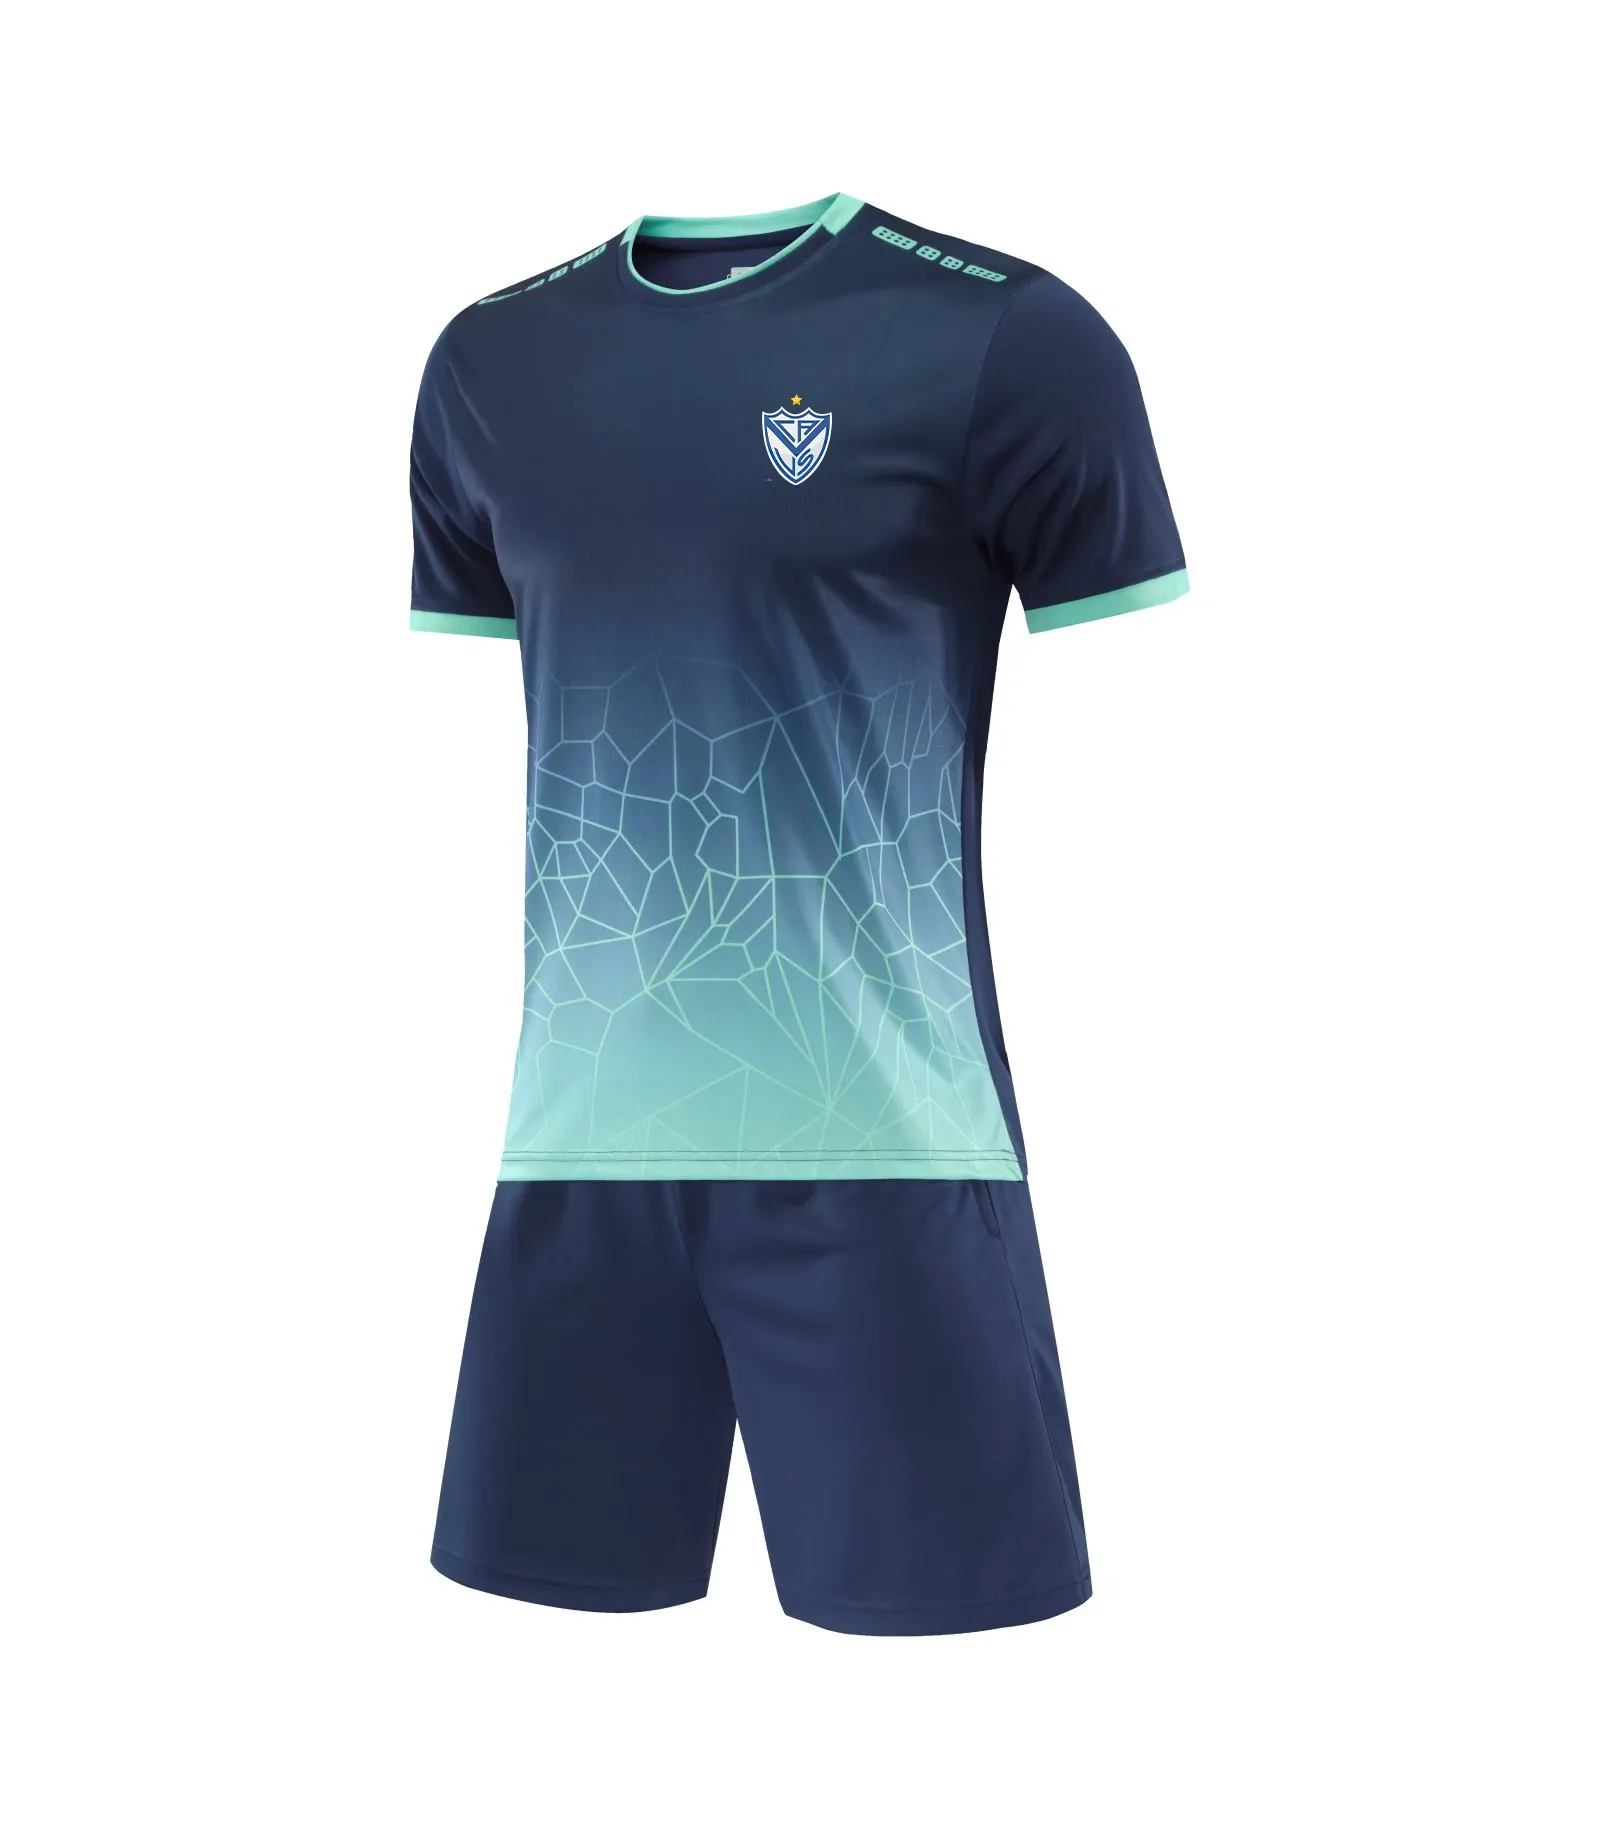 Chándales de Vélez Sarsfield para hombre, trajes de entrenamiento al aire libre para deportes de ocio de alta calidad con mangas cortas y camisetas finas de secado rápido